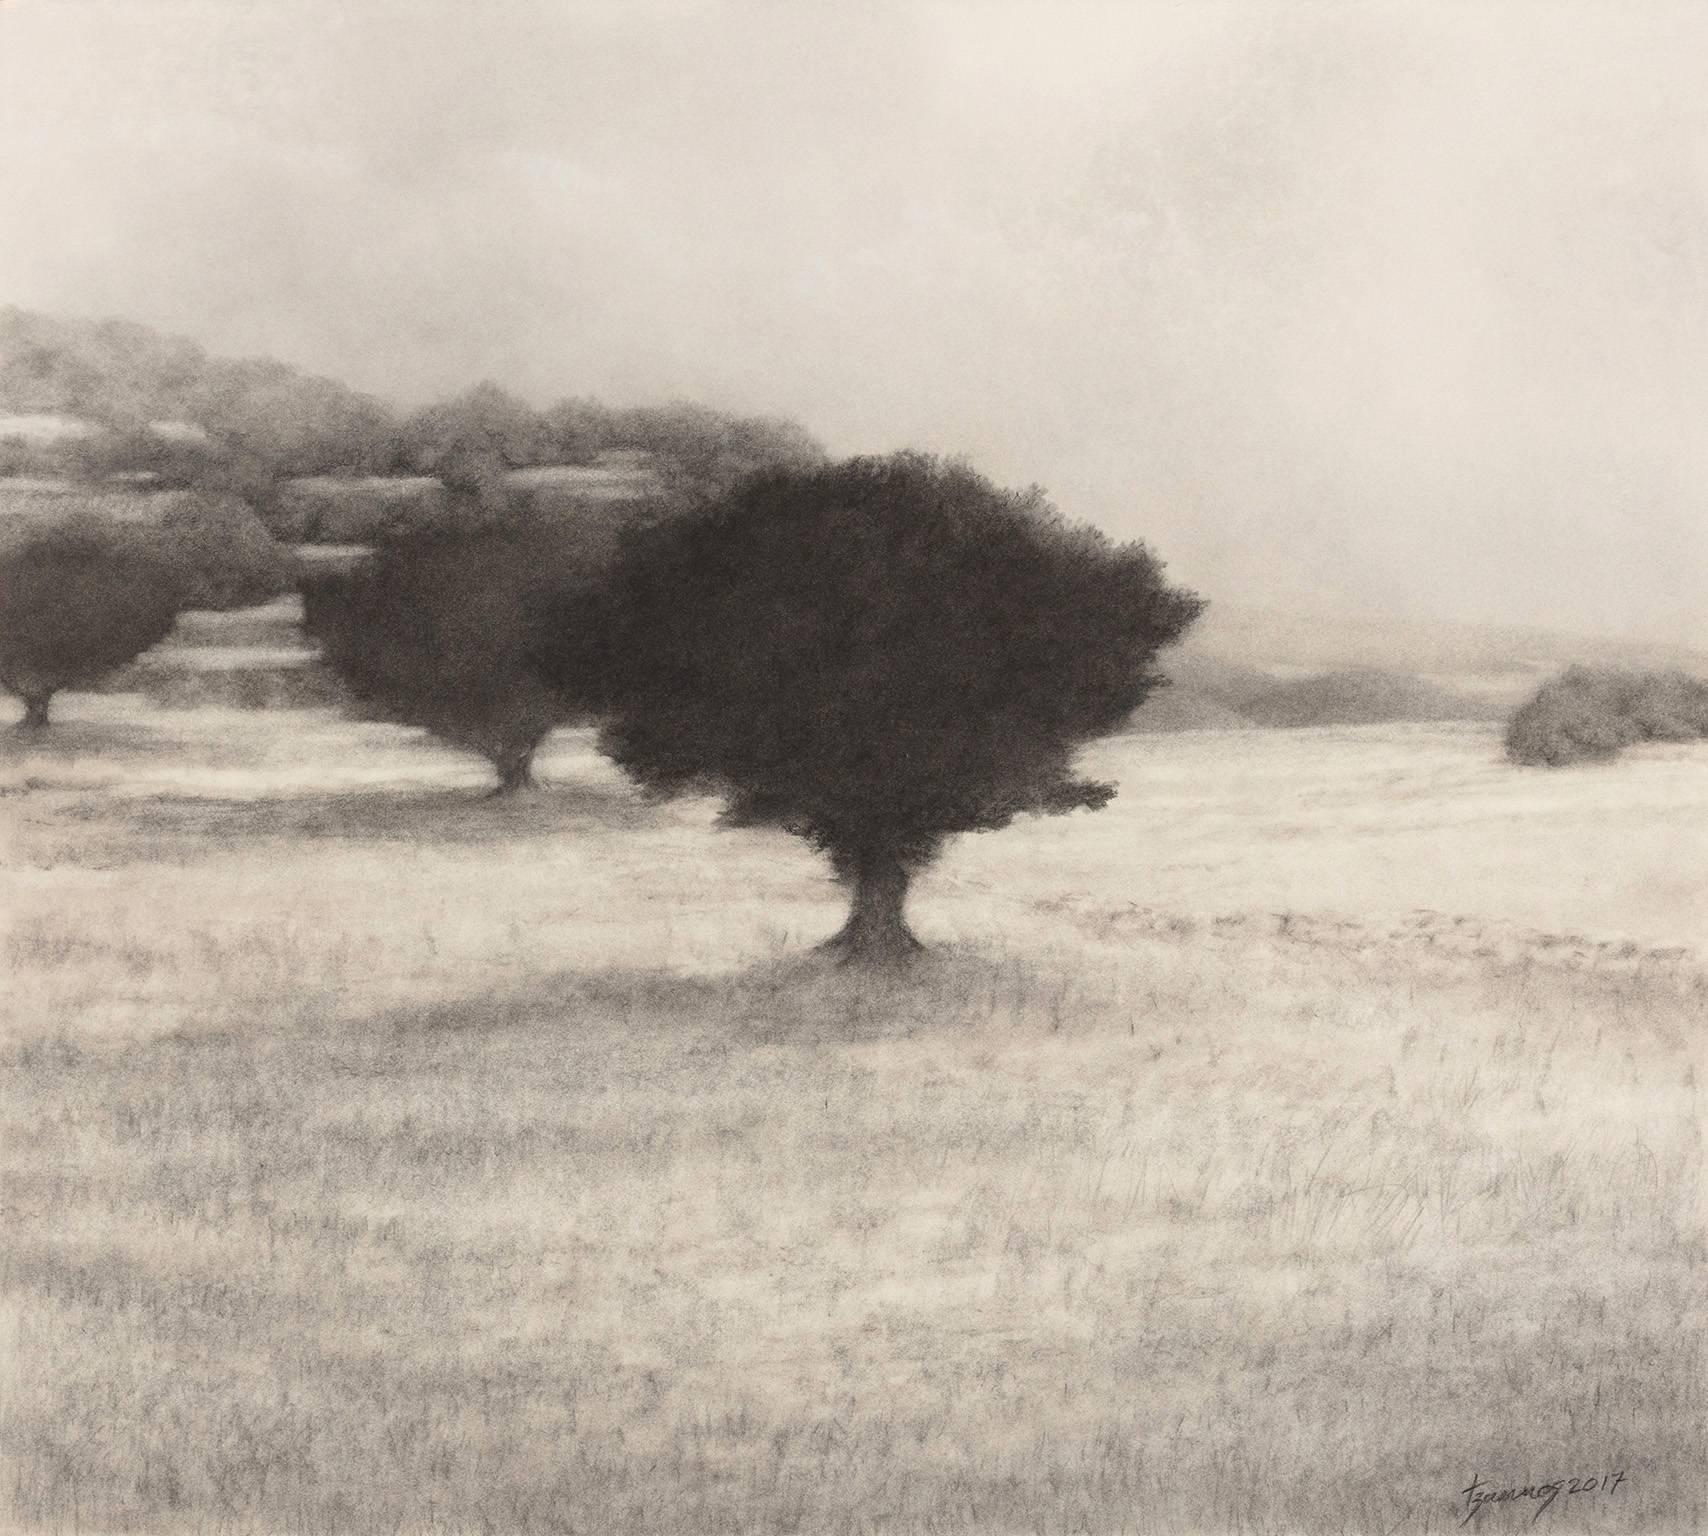 Paysage avec arbre d'olivier - Paysage noir et blanc de l'île grecque 